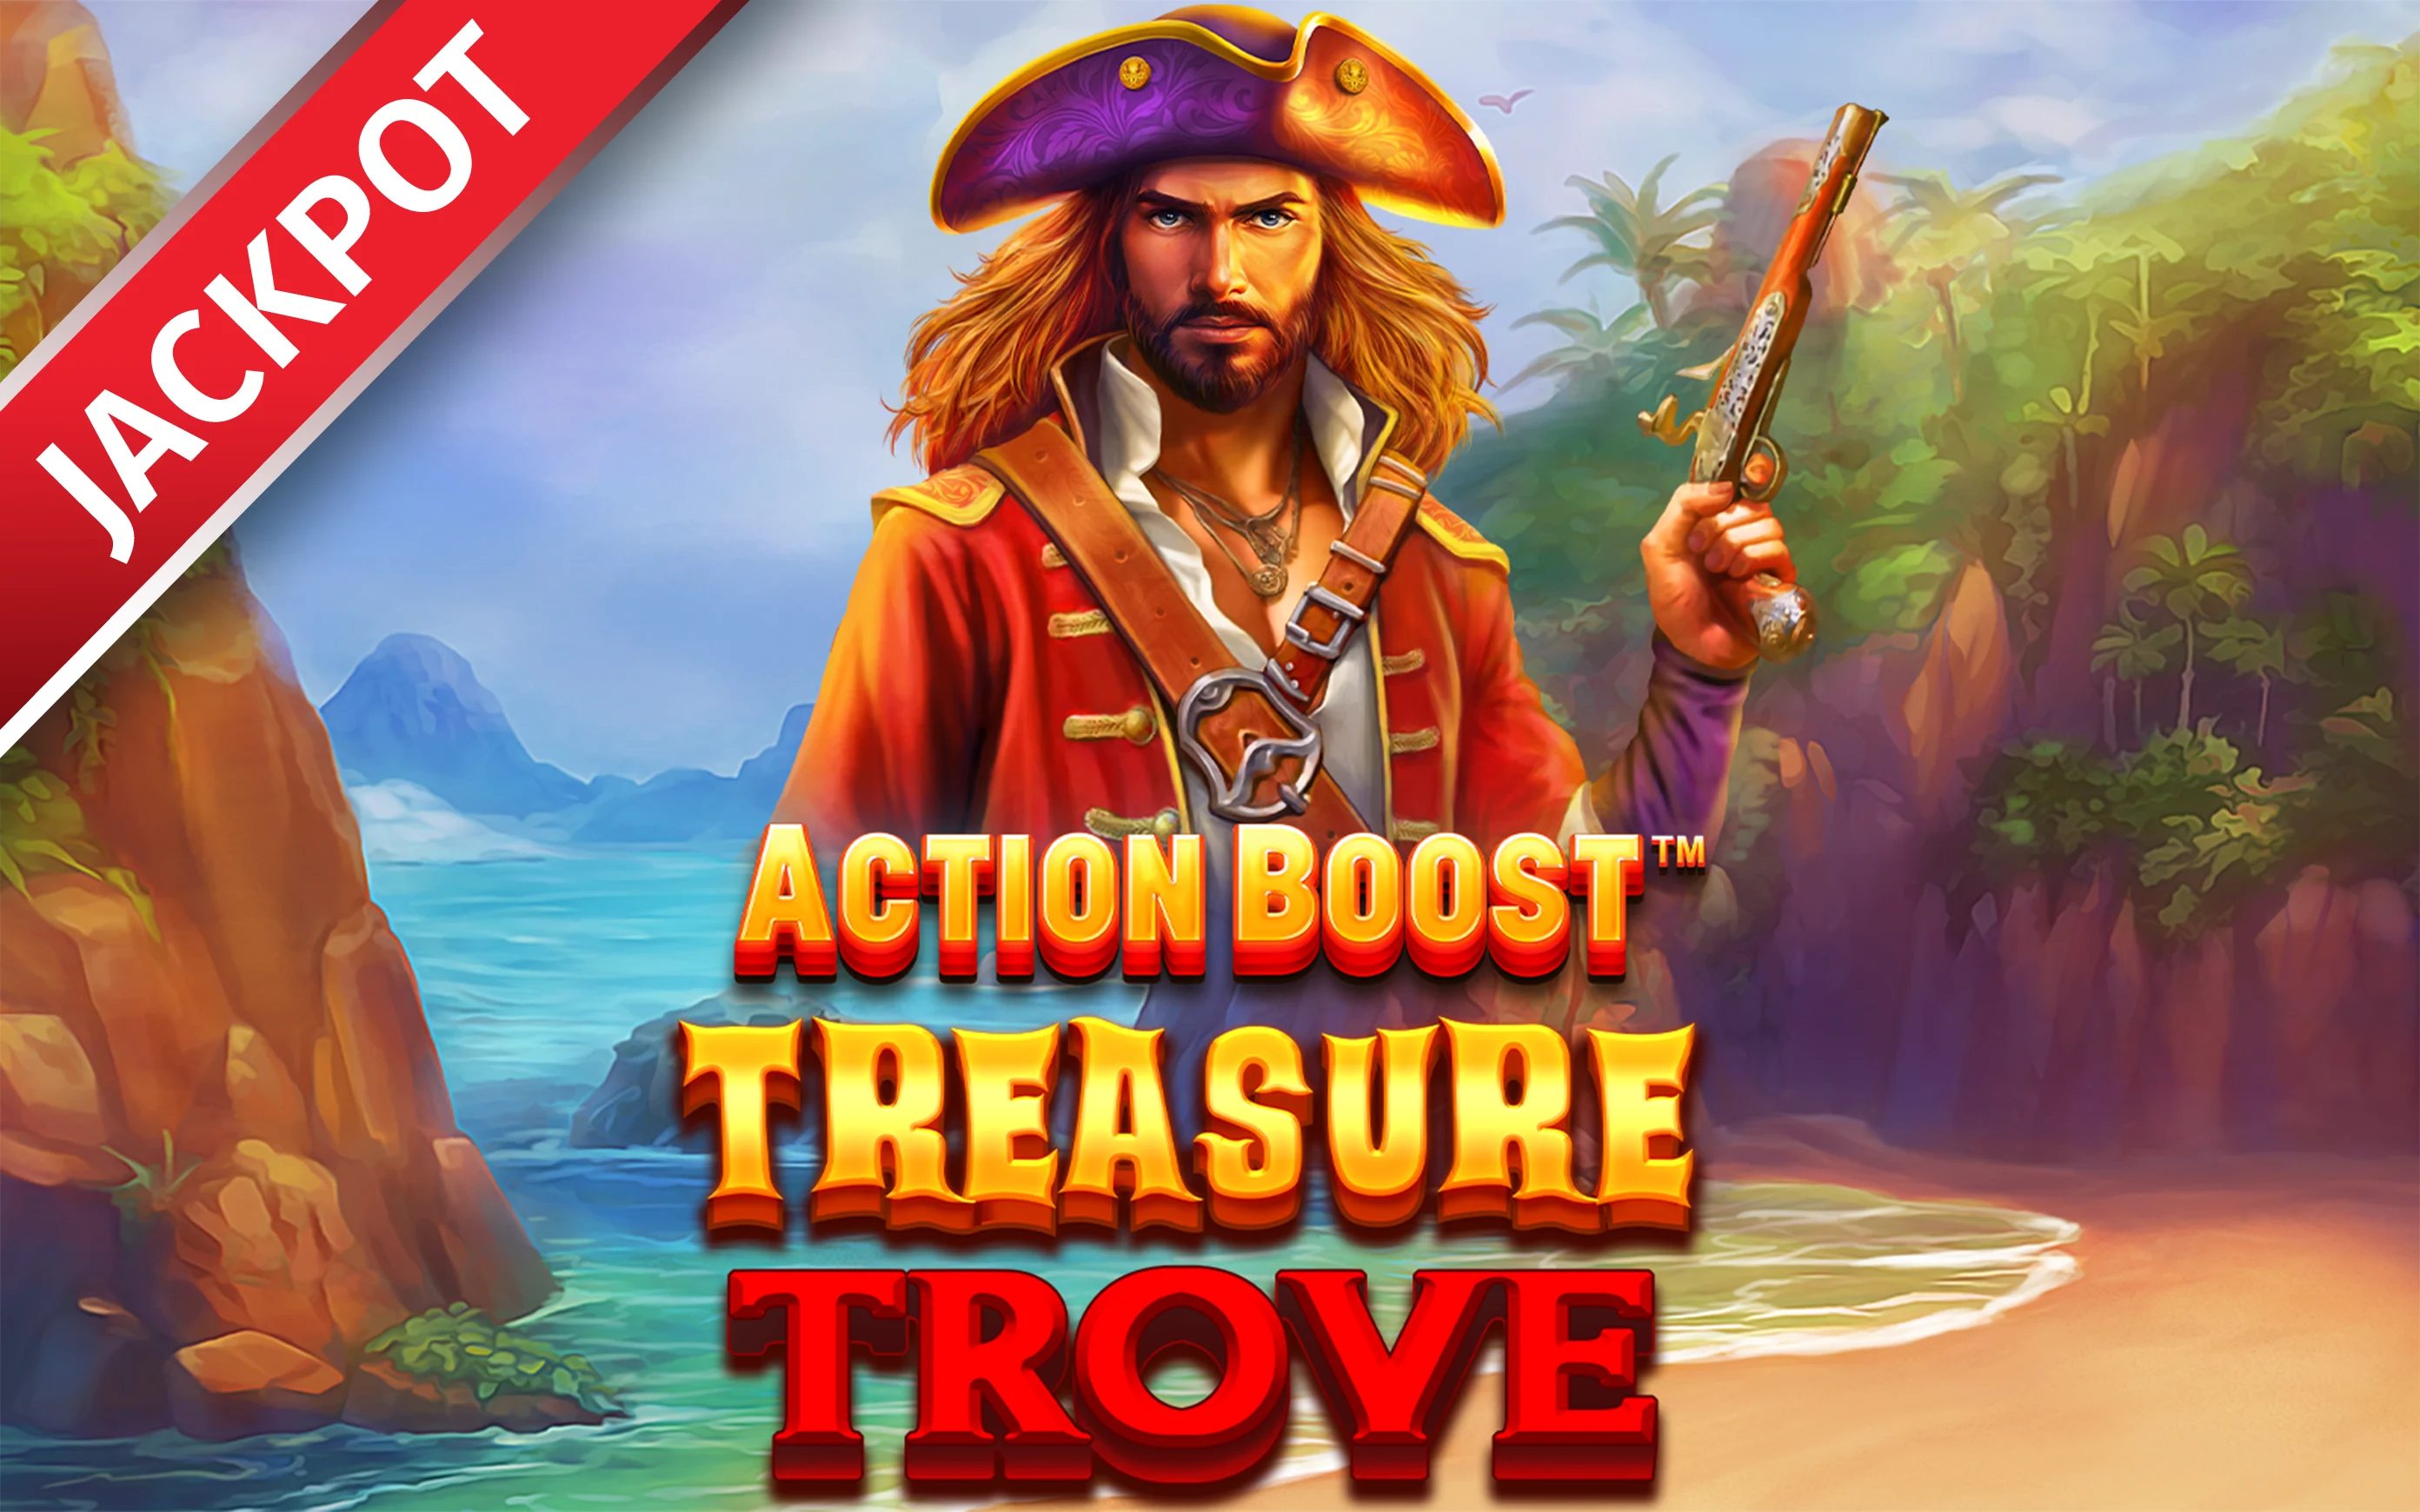 Gioca a Action Boost™ Treasure Trove™ sul casino online Starcasino.be